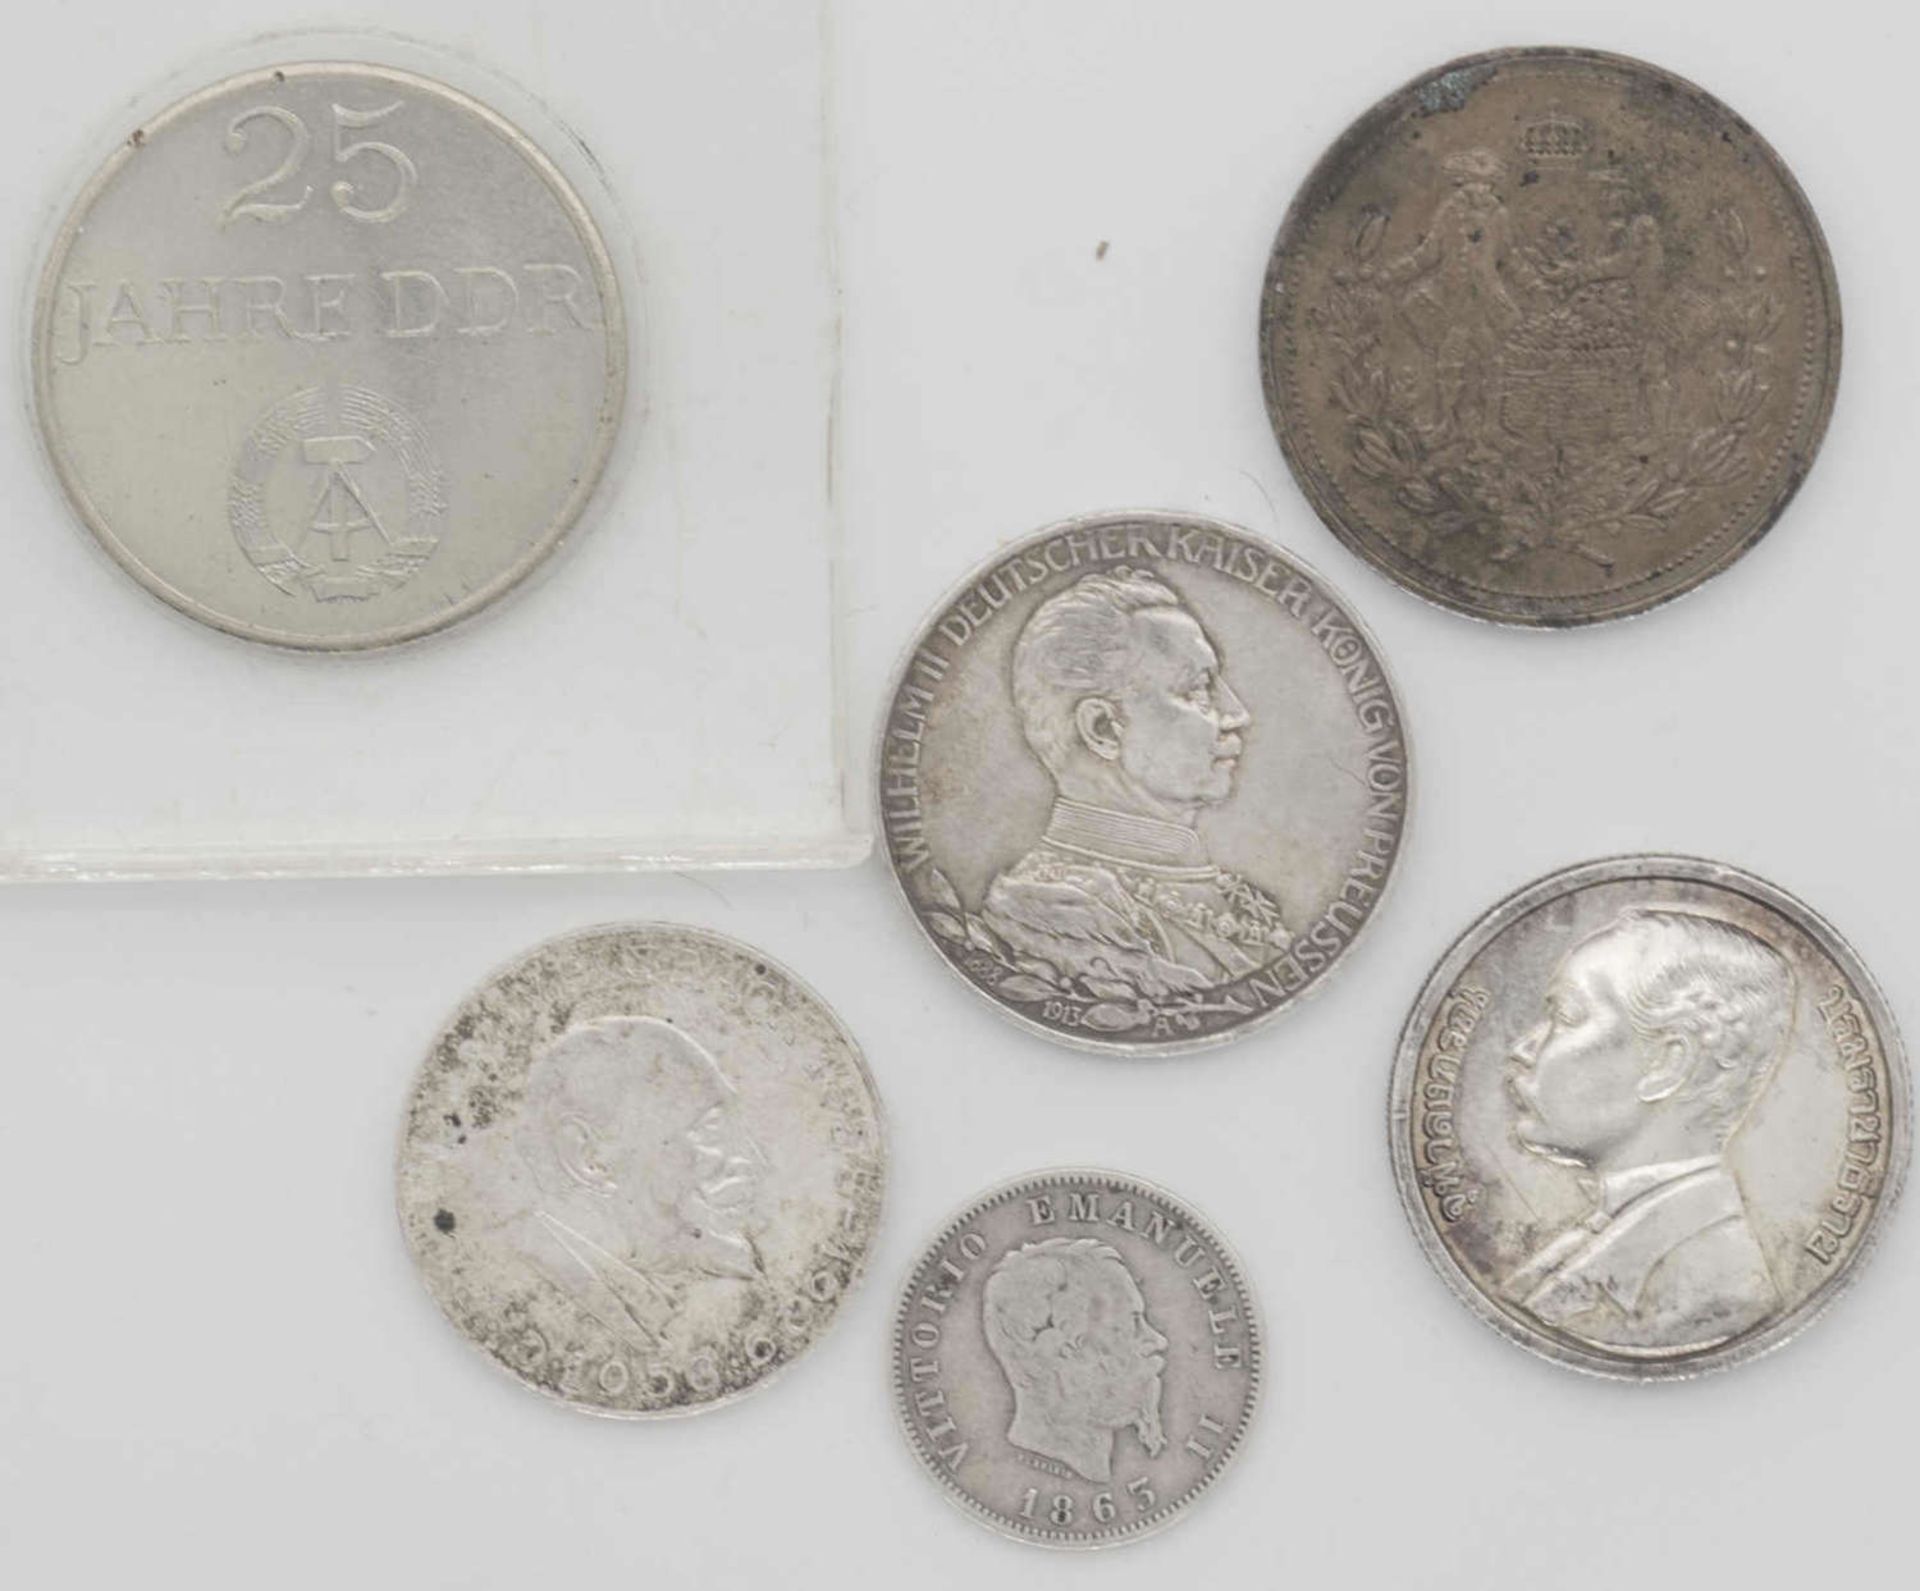 Lot Silbermünzen aus aller Welt, dabei Italien 1863 1 Lire, Deutschland 1913 3 Mark, Österreich 25